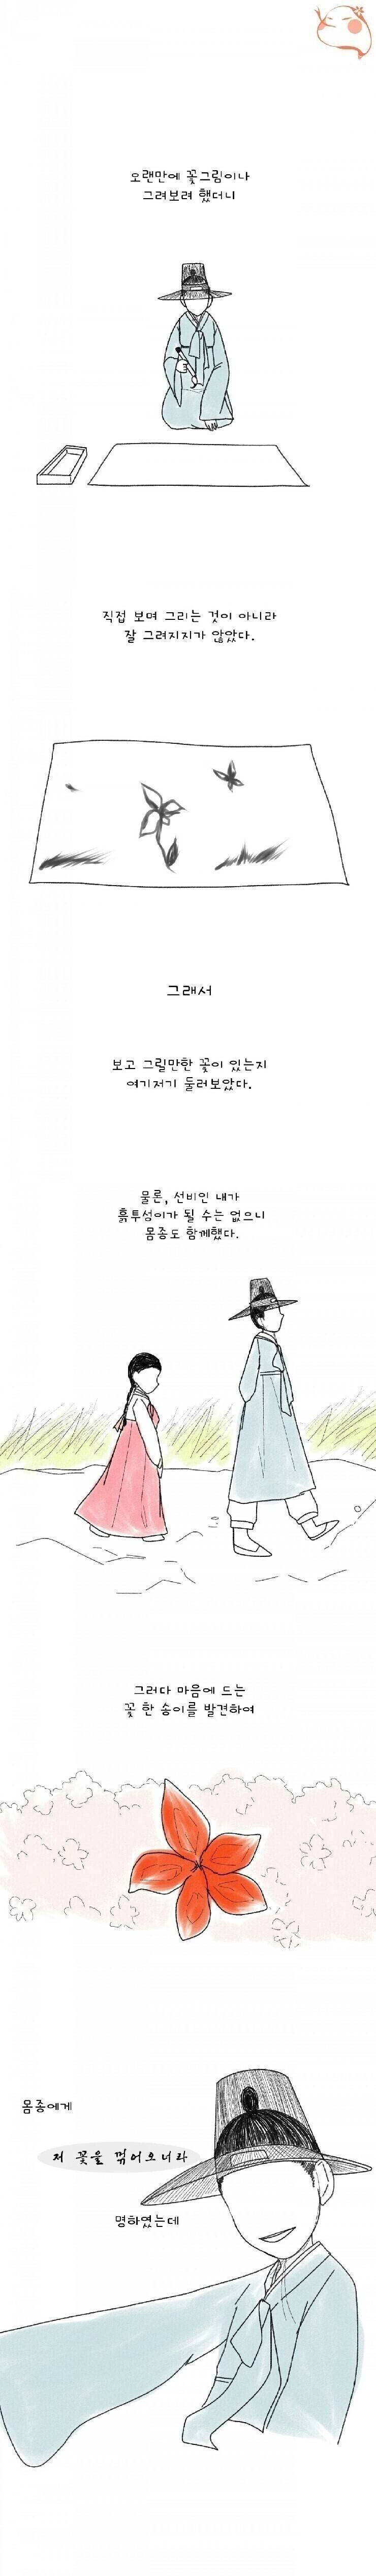 스압) 조선시대 여자 몸종의 삶...manhwa